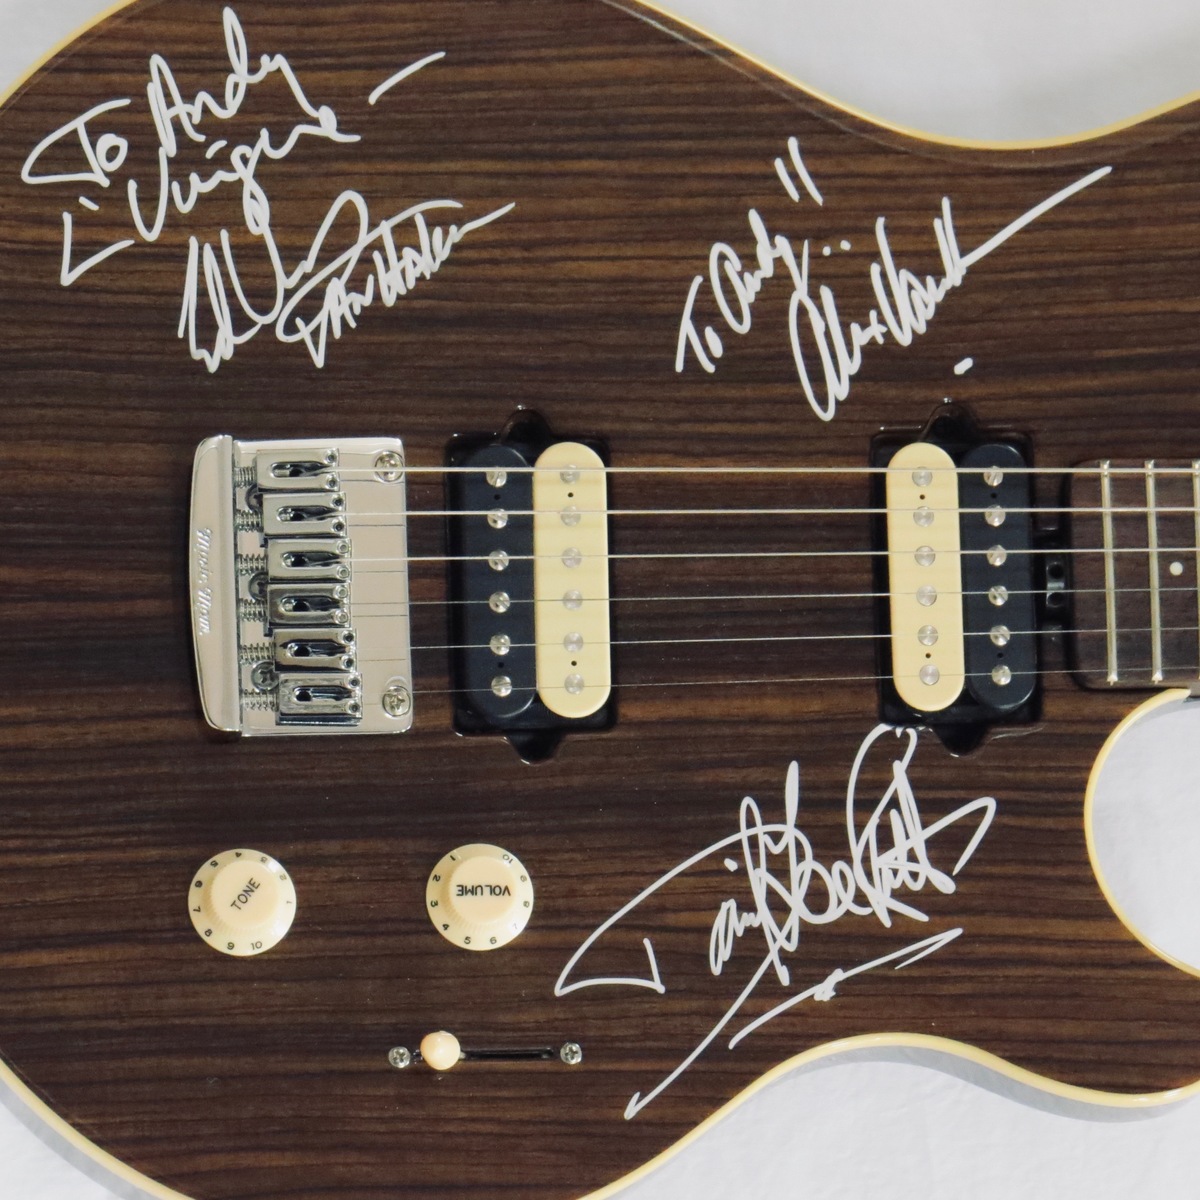 Van Halen – Axis-Super-Sport  dark oalk Guitar  Signed and Personalized by Van Halen  USA